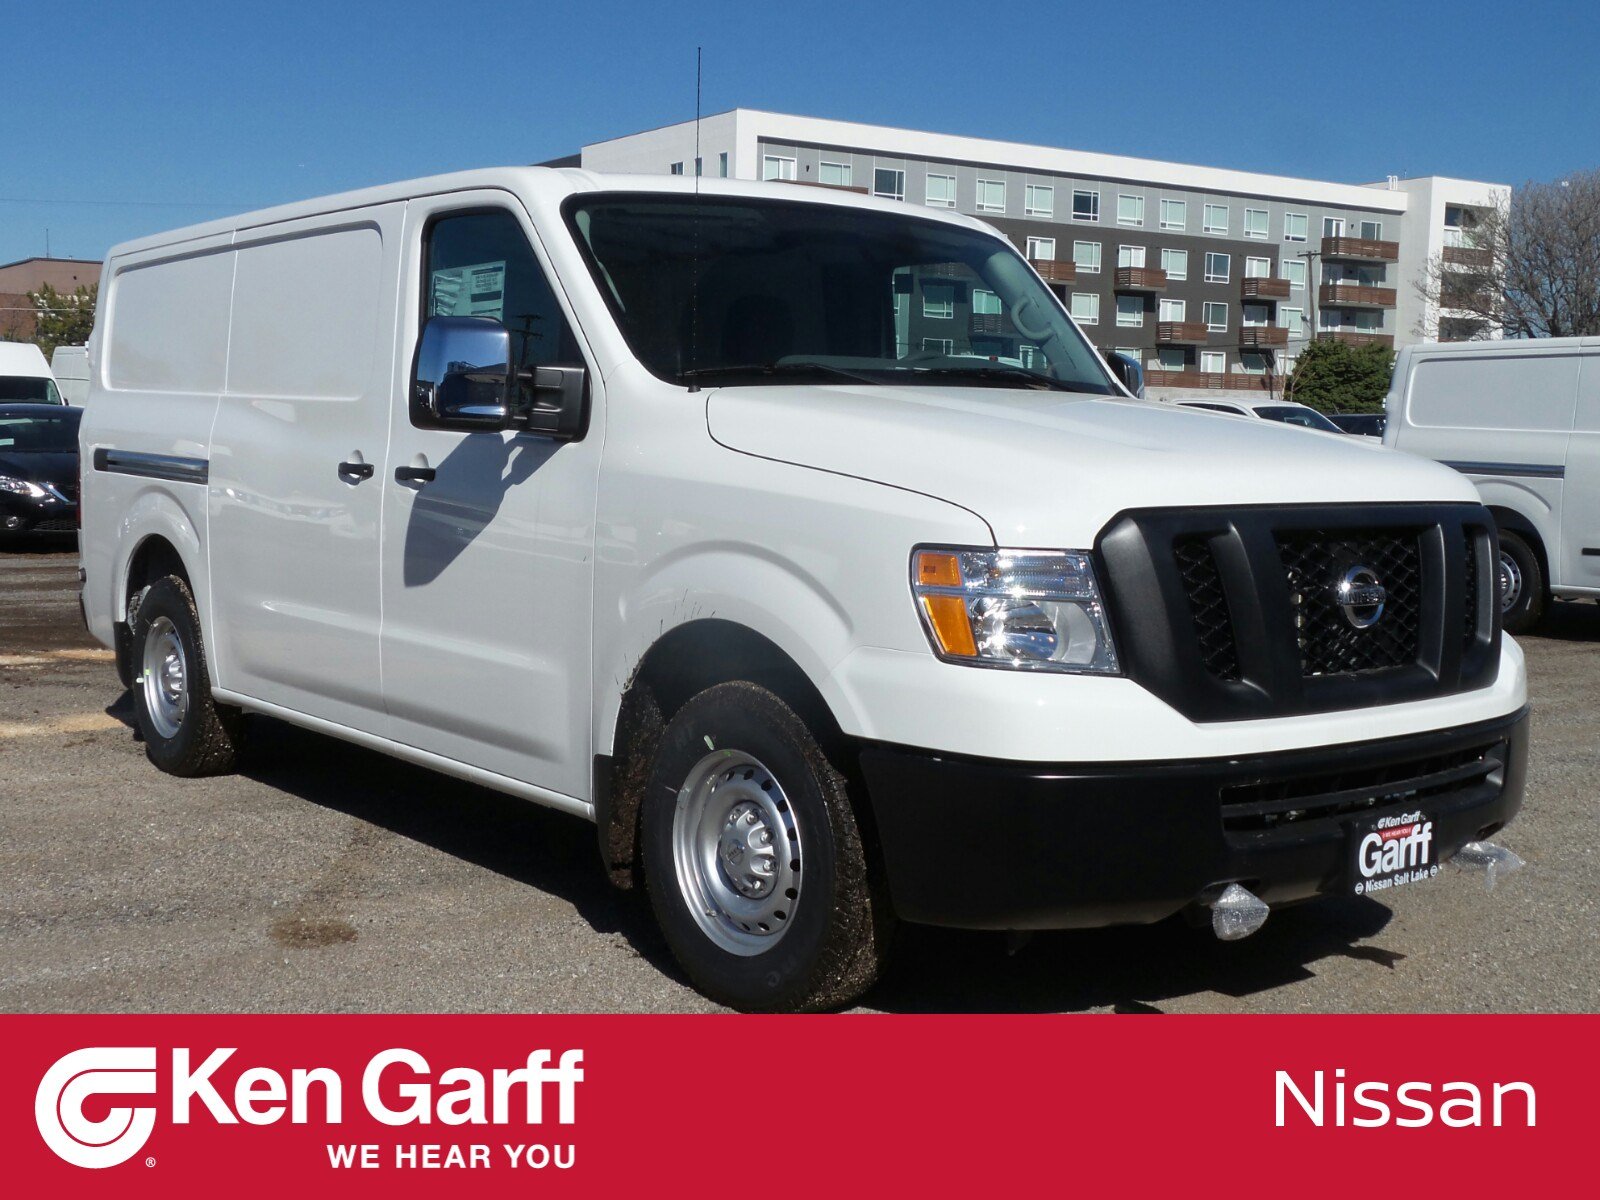 New 2019 Nissan Nv Cargo S Full Size Cargo Van 1n90214 Ken